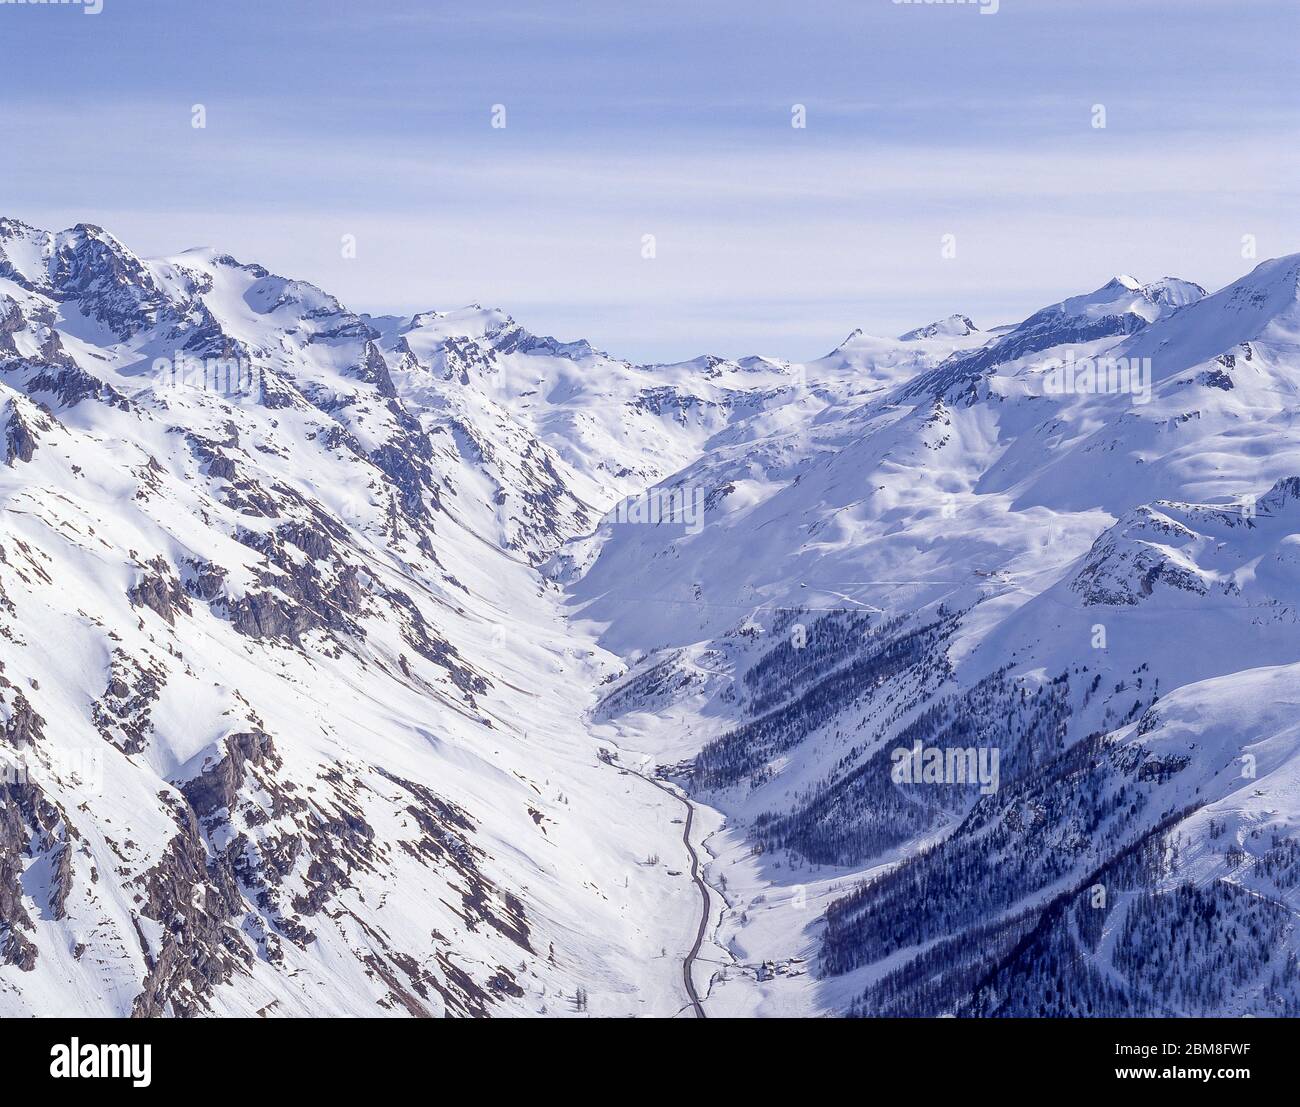 Blick auf die Alpen und das Tarentaise-Tal, Val d'Isere, Savoie, Frankreich Stockfoto